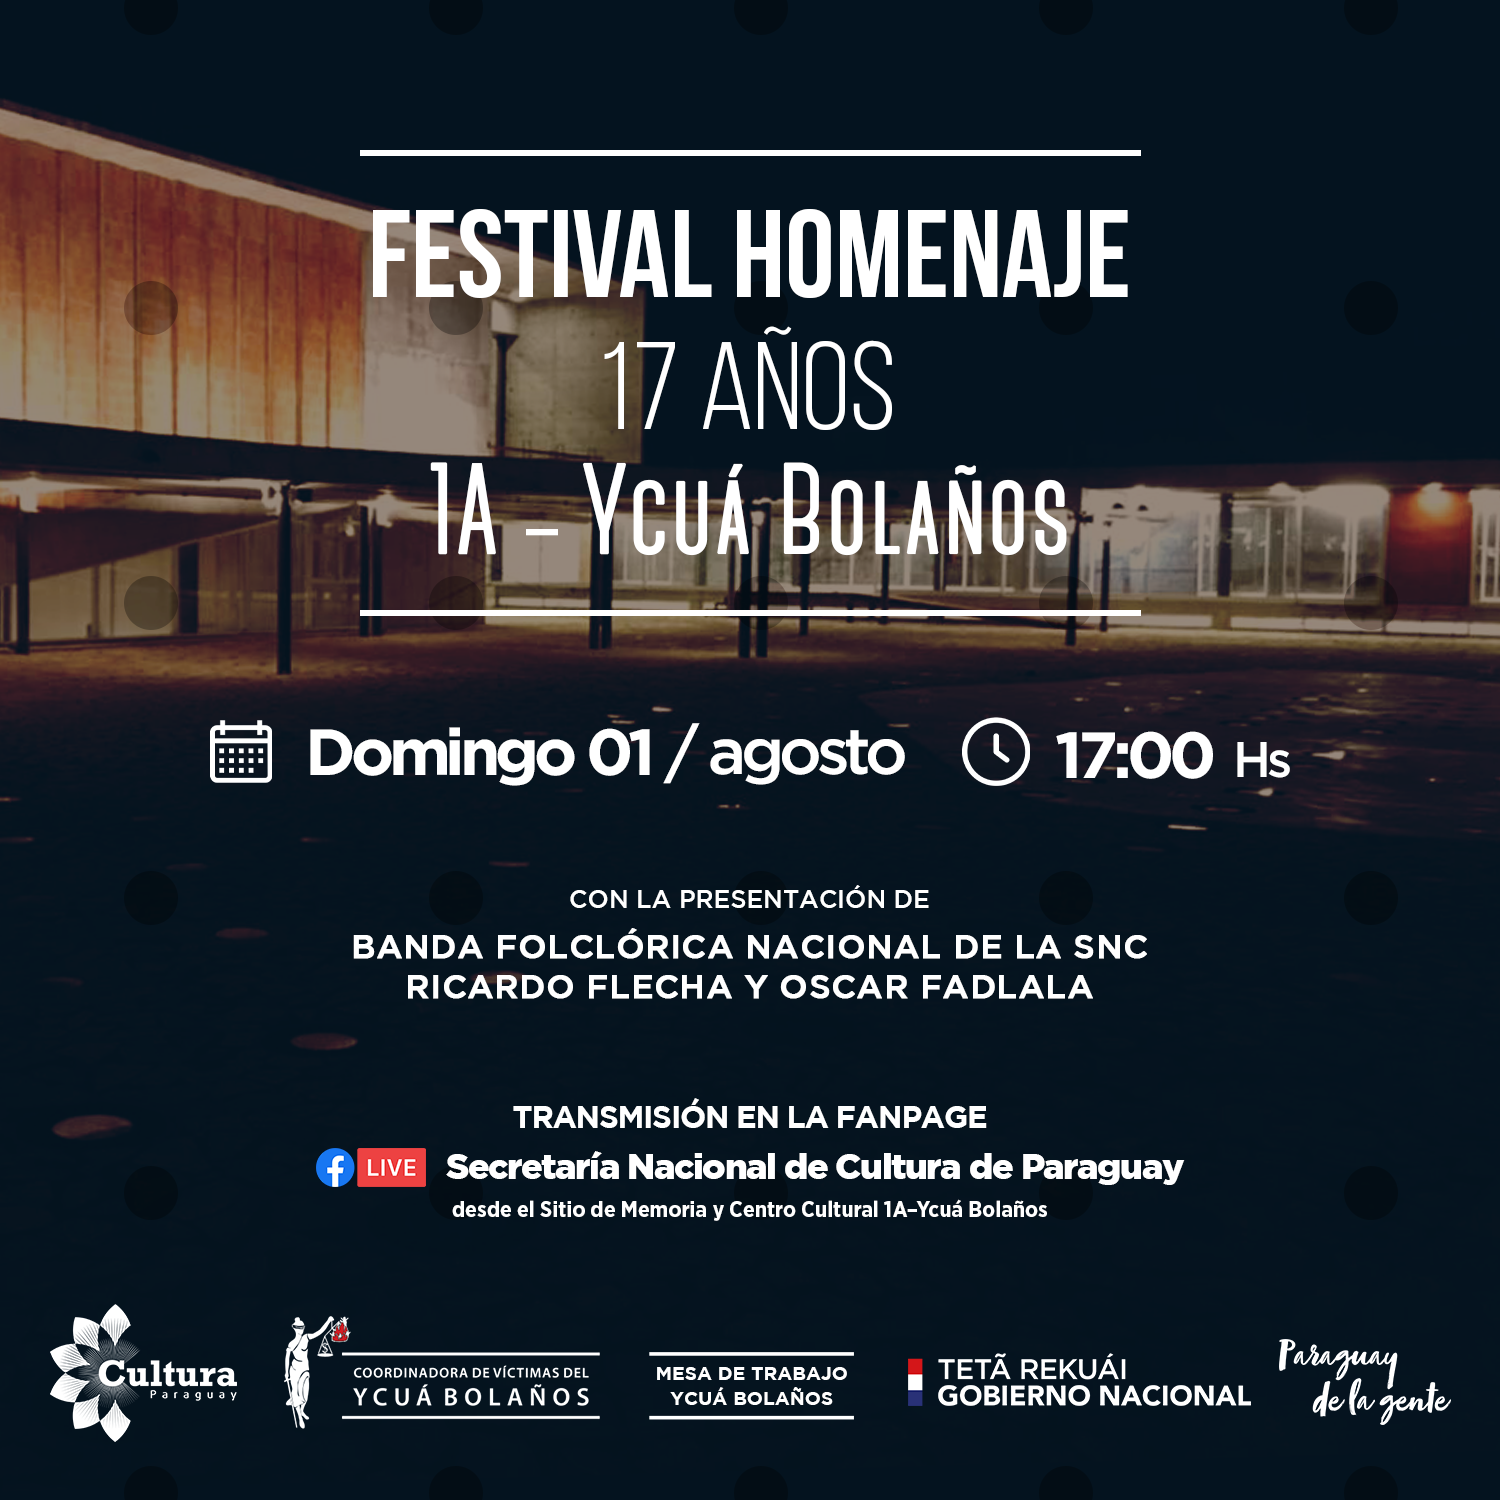 Flyer_Festival_Homenaje_1A-Ycua_Bolanos.png